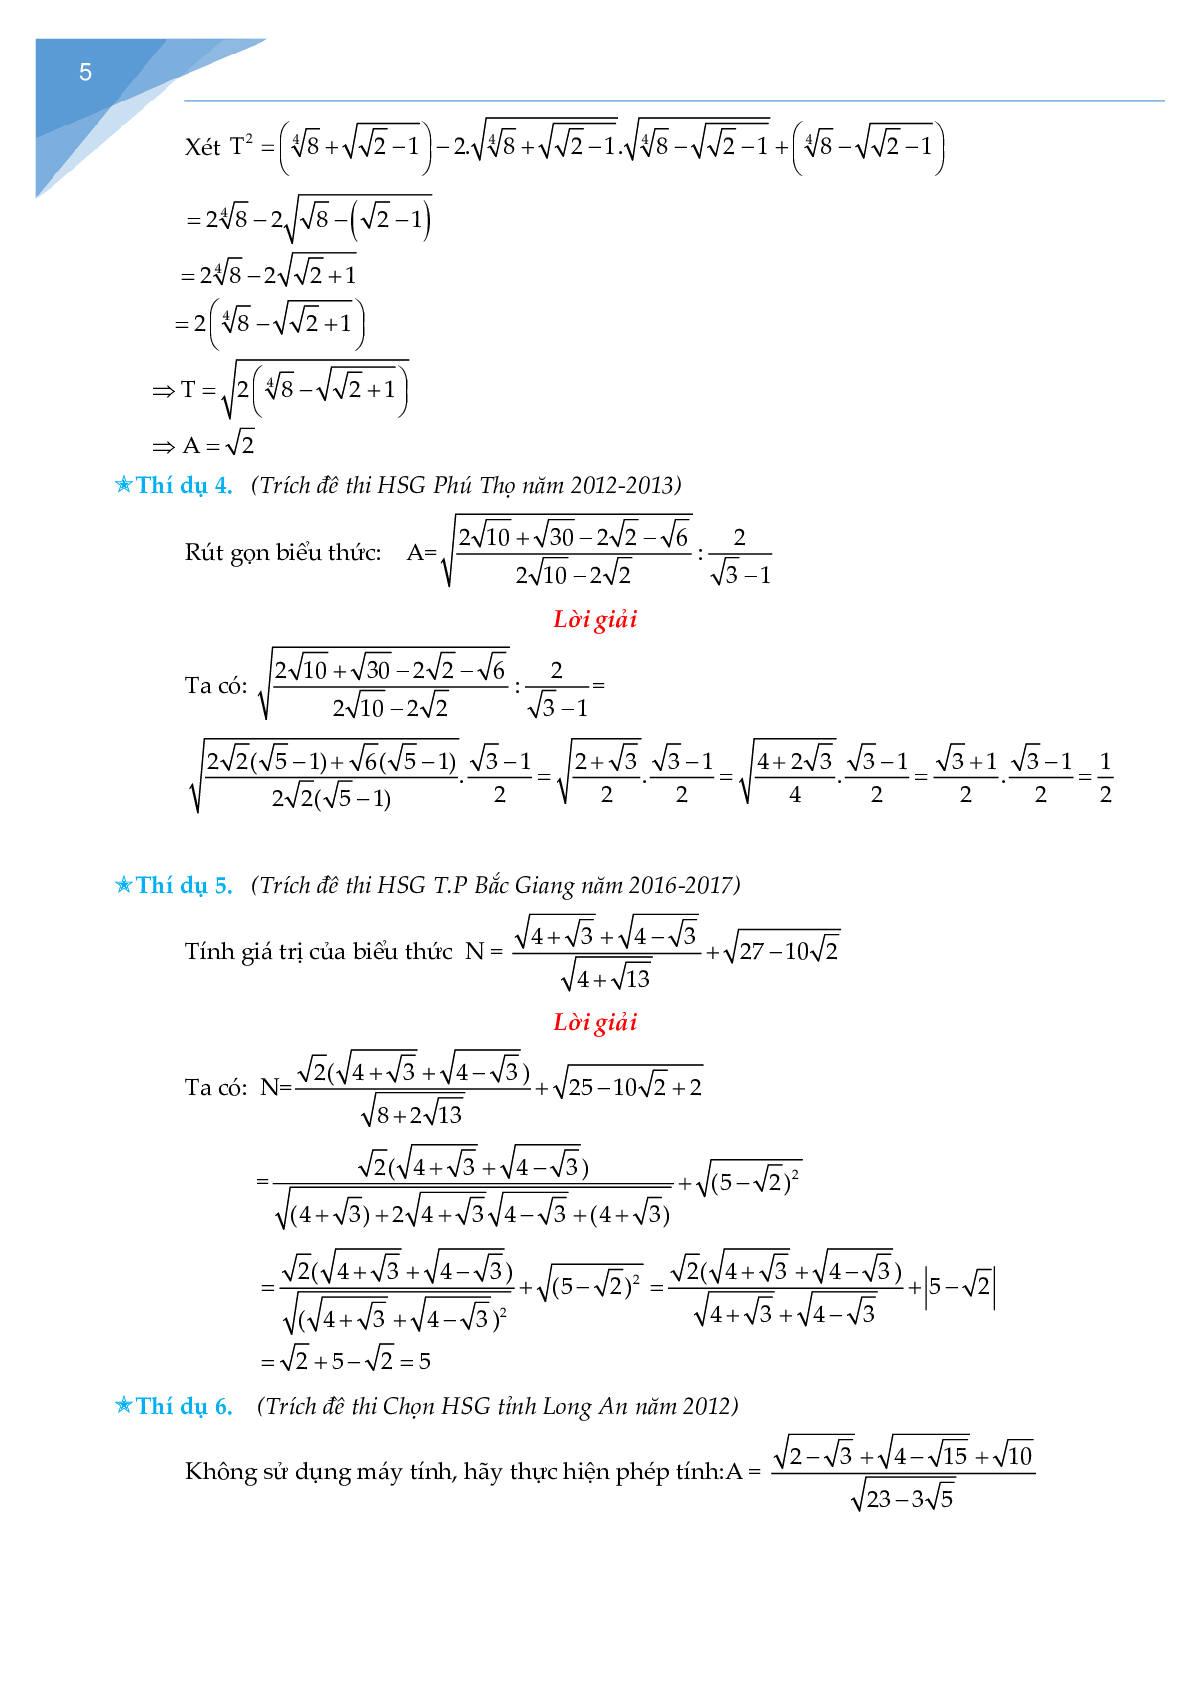 Rút gọn biểu thức chứa căn và bài toán liên quan (trang 5)